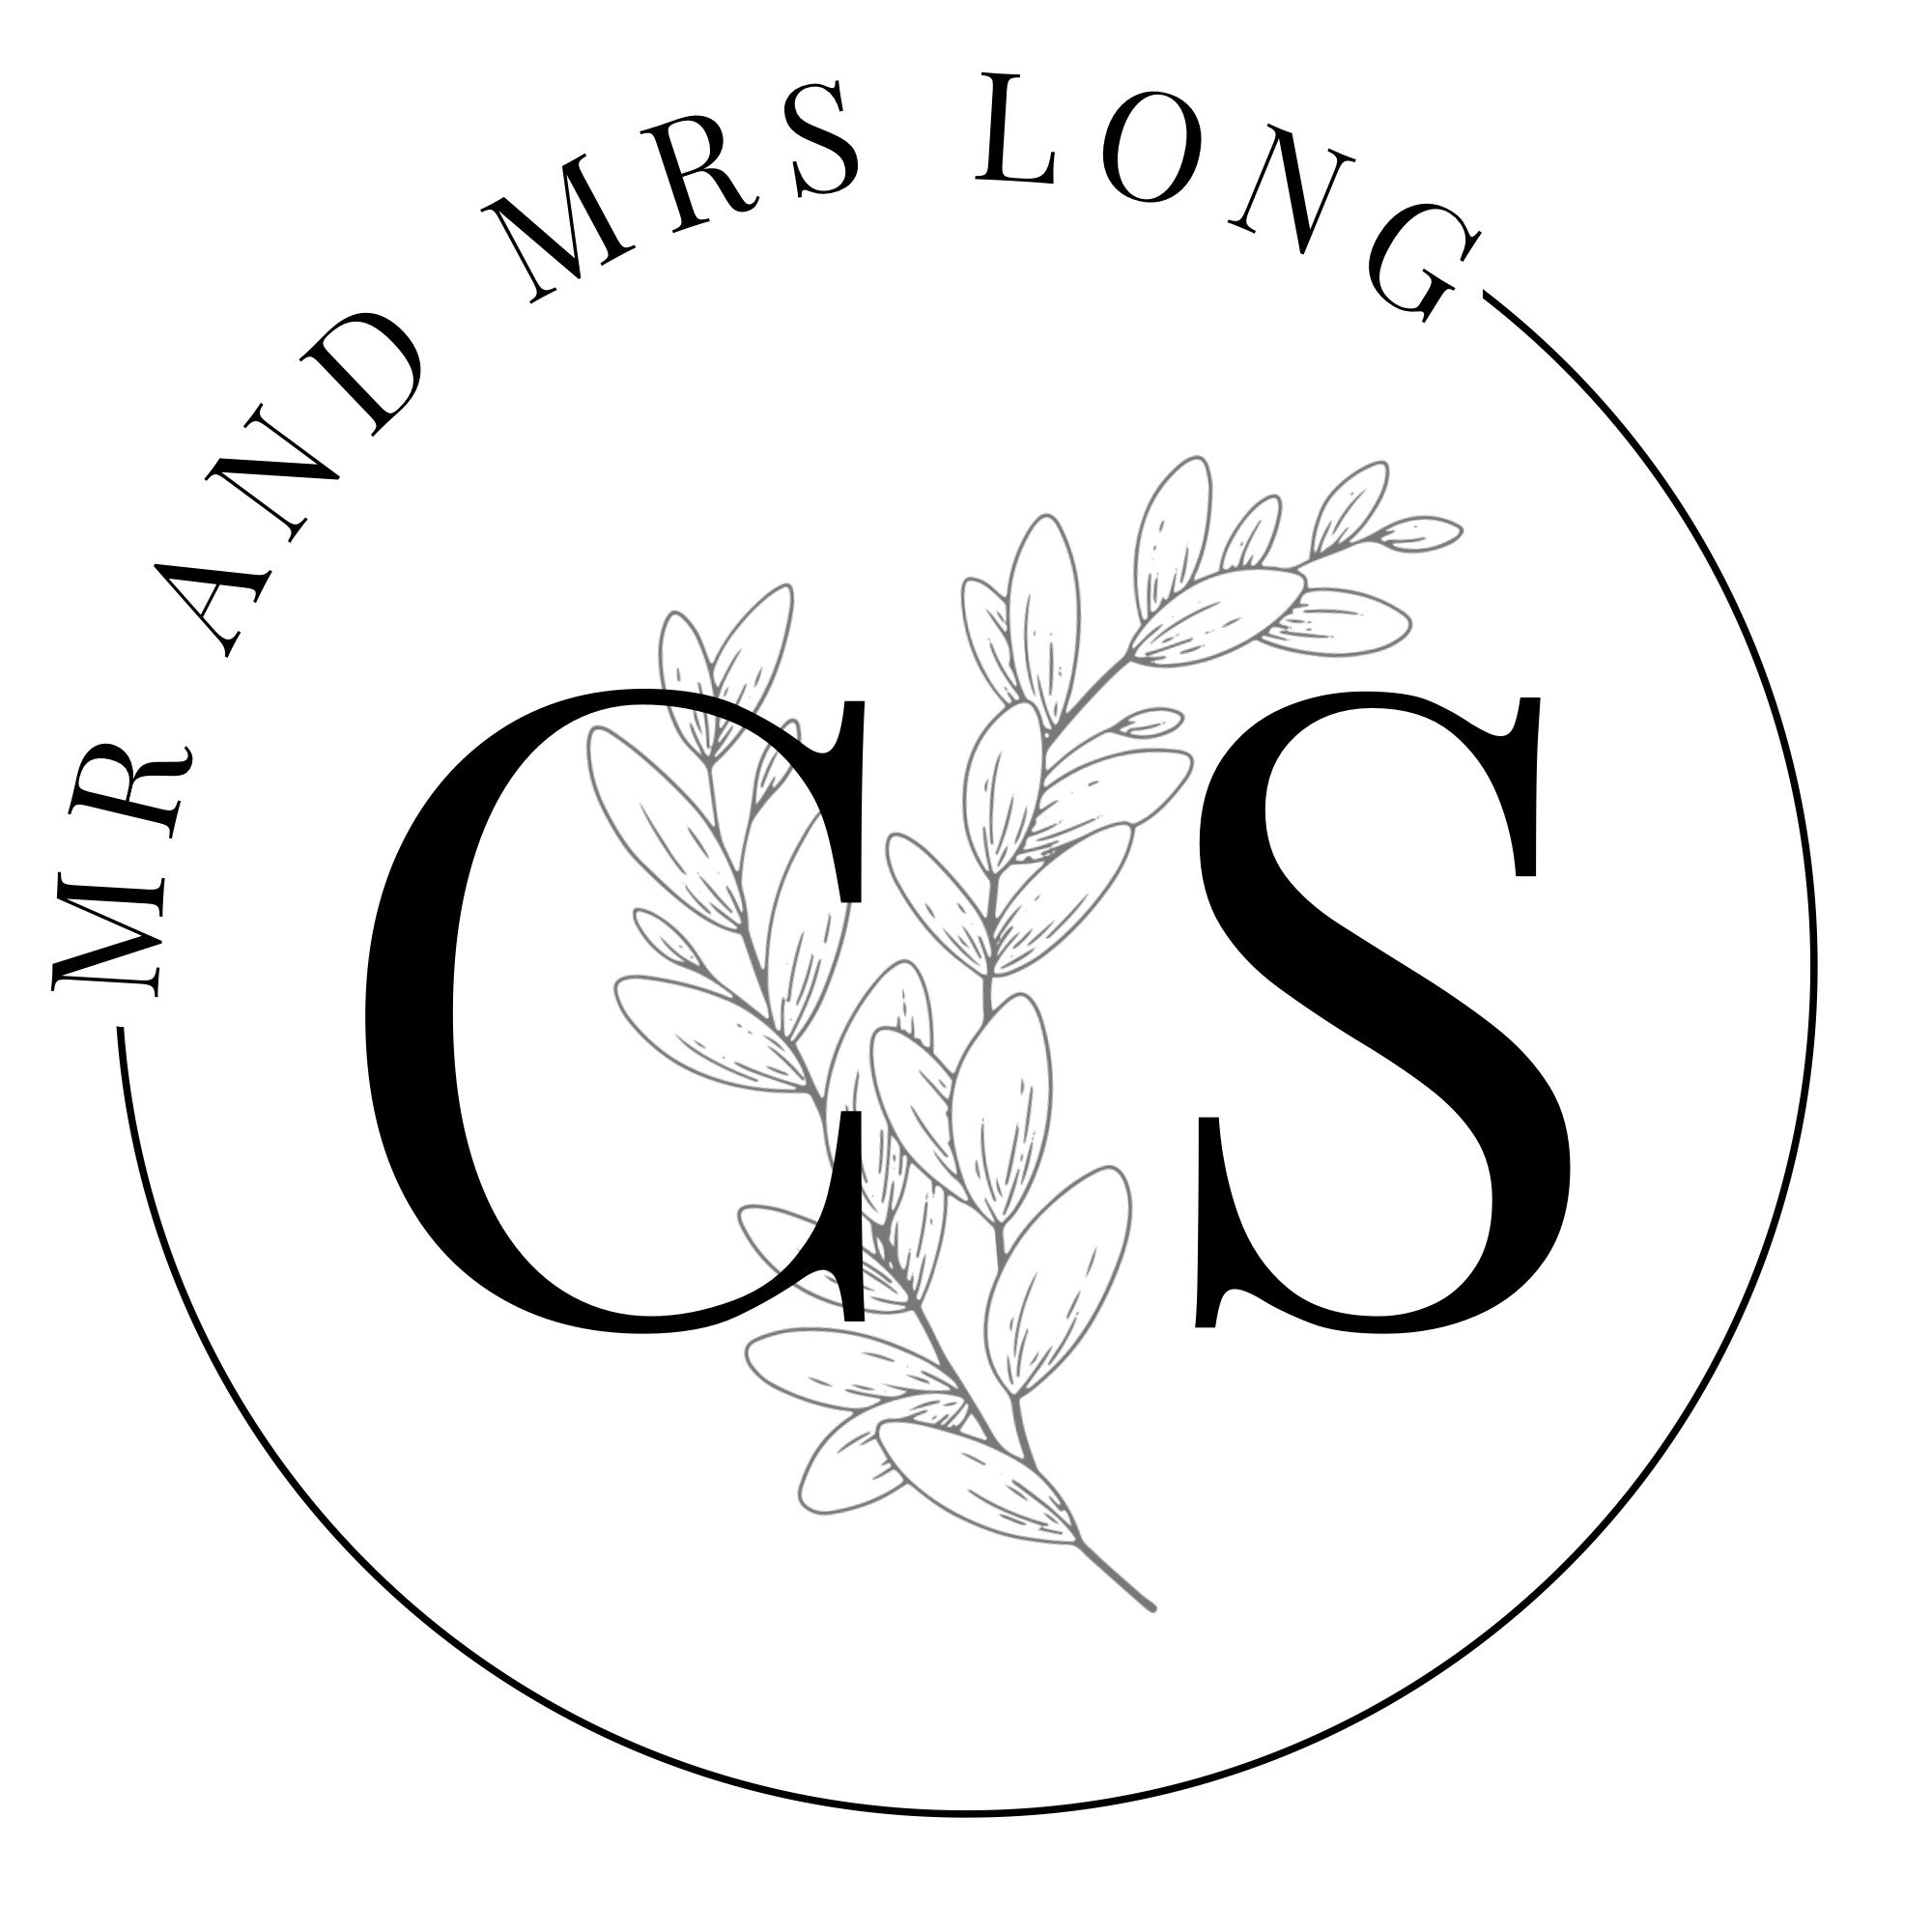 C&S logo.jpeg